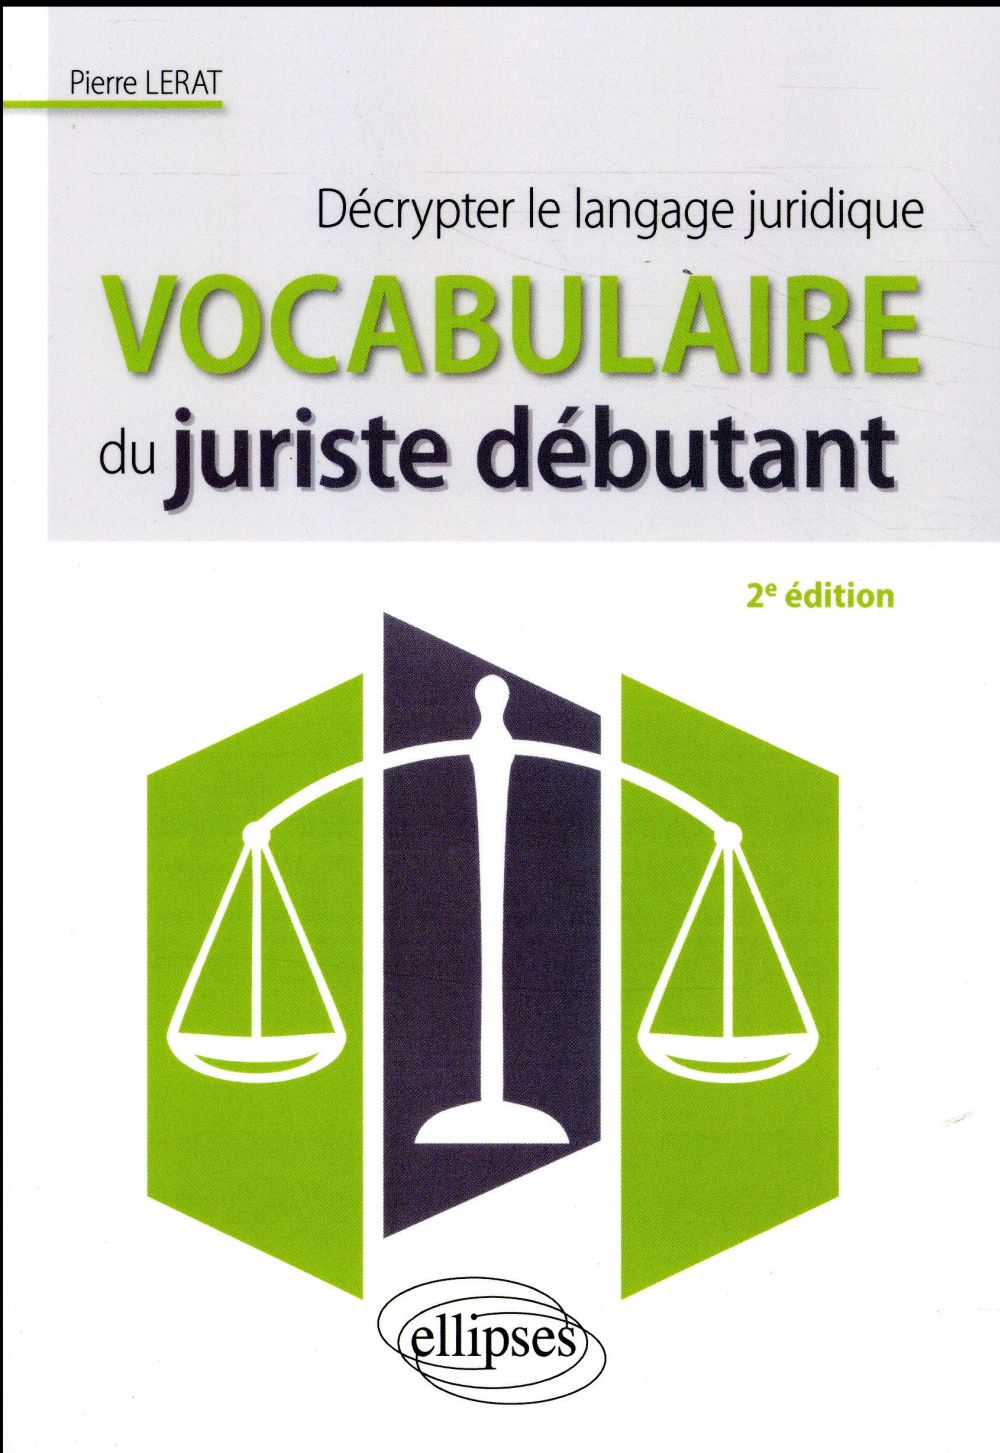 VOCABULAIRE DU JURISTE DEBUTANT. DECRYPTER LE LANGAGE JURIDIQUE - 2E EDITION